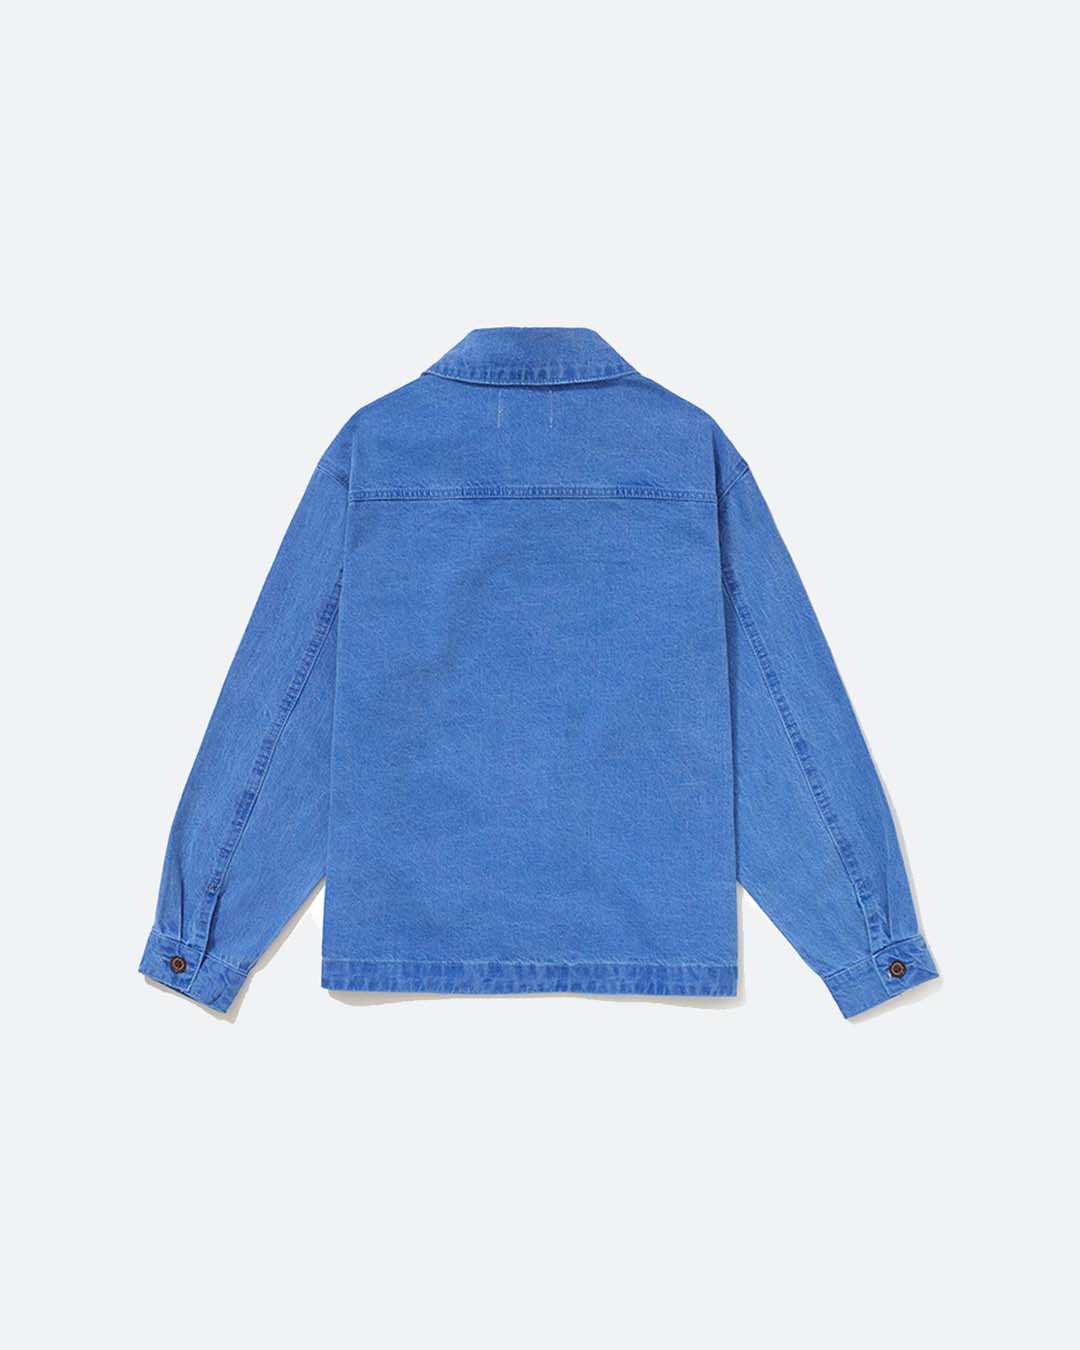 Blue Moleskin Jacket